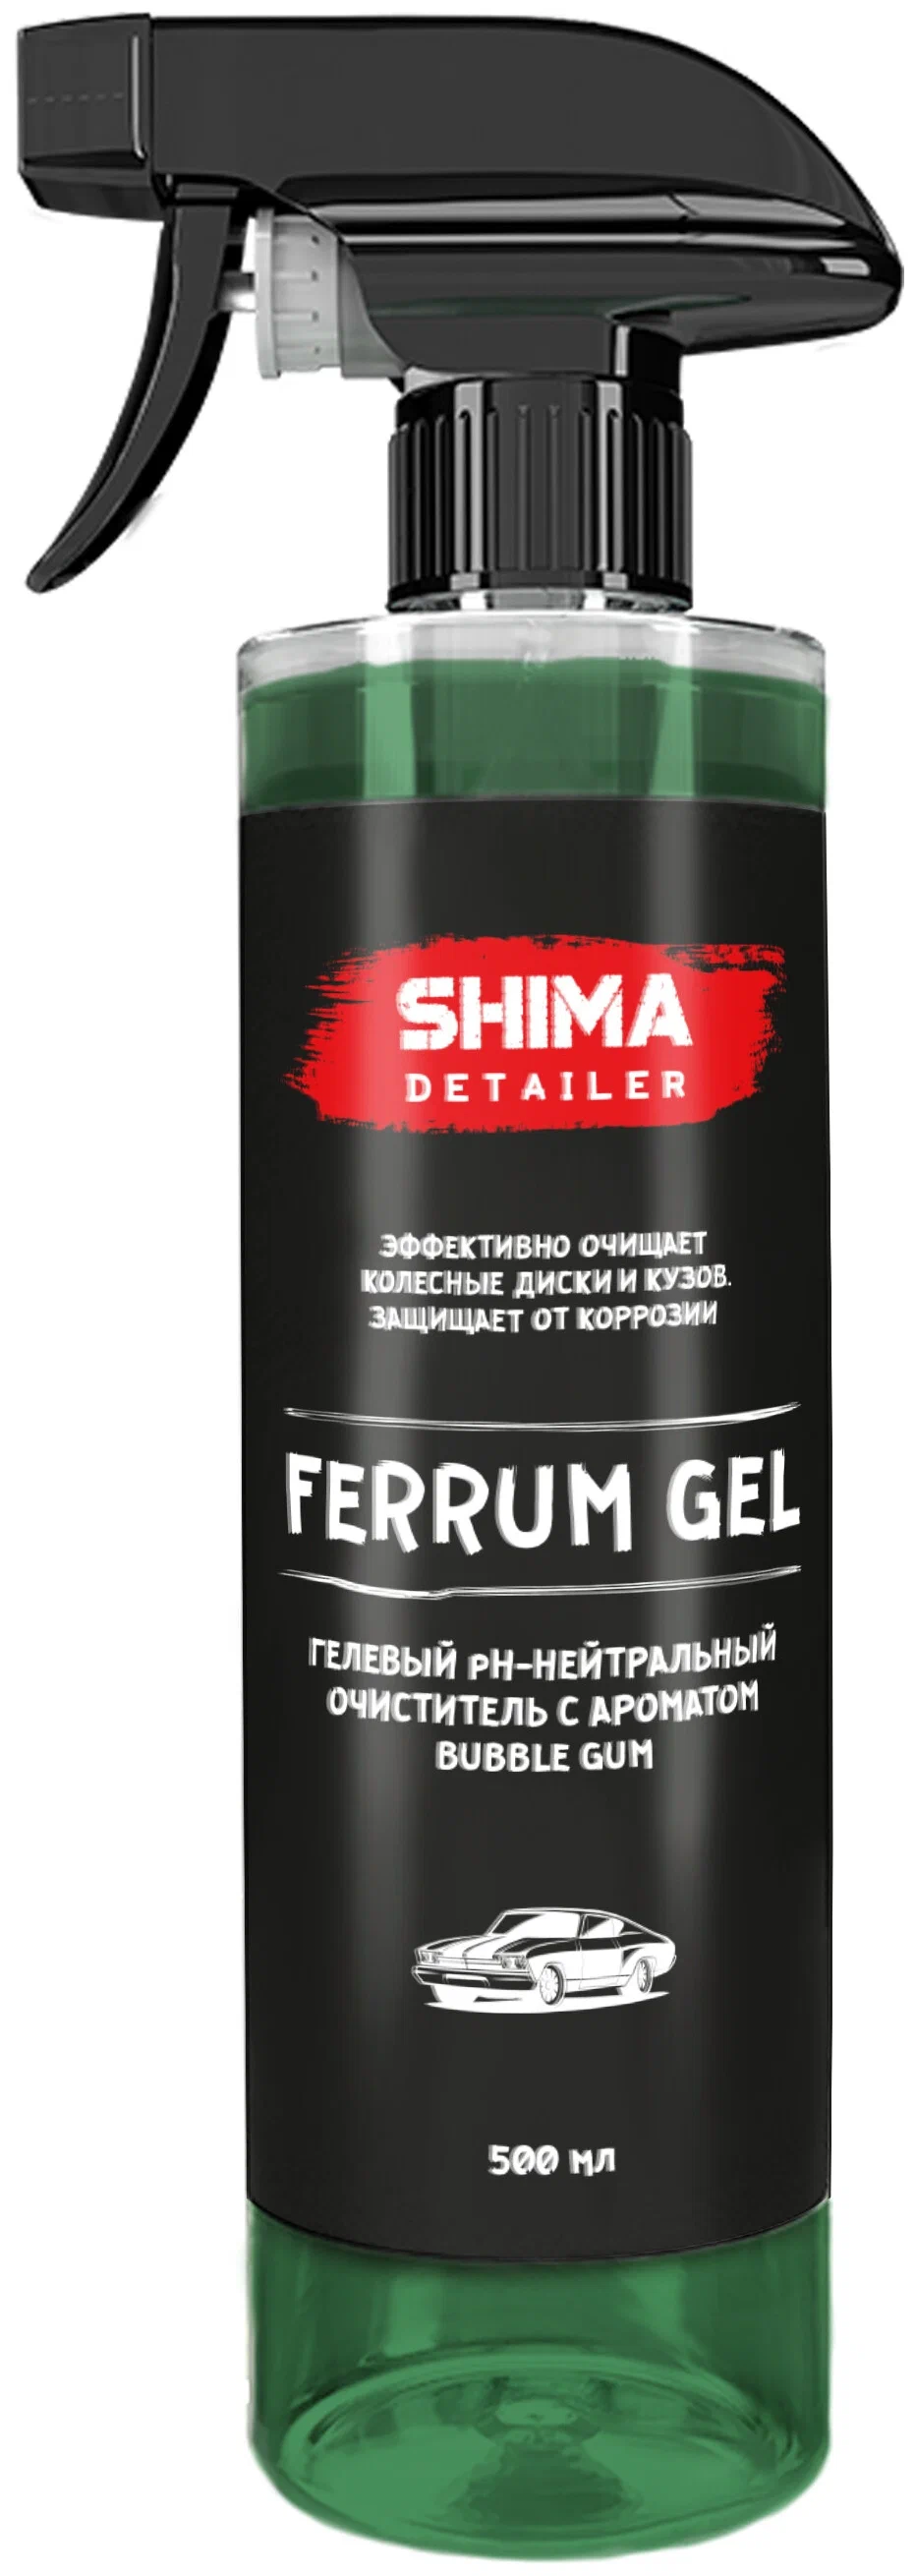 Очиститель дисков и кузова SHIMA DETAILER FERRUM GEL BUBBLE GUM 500 мл